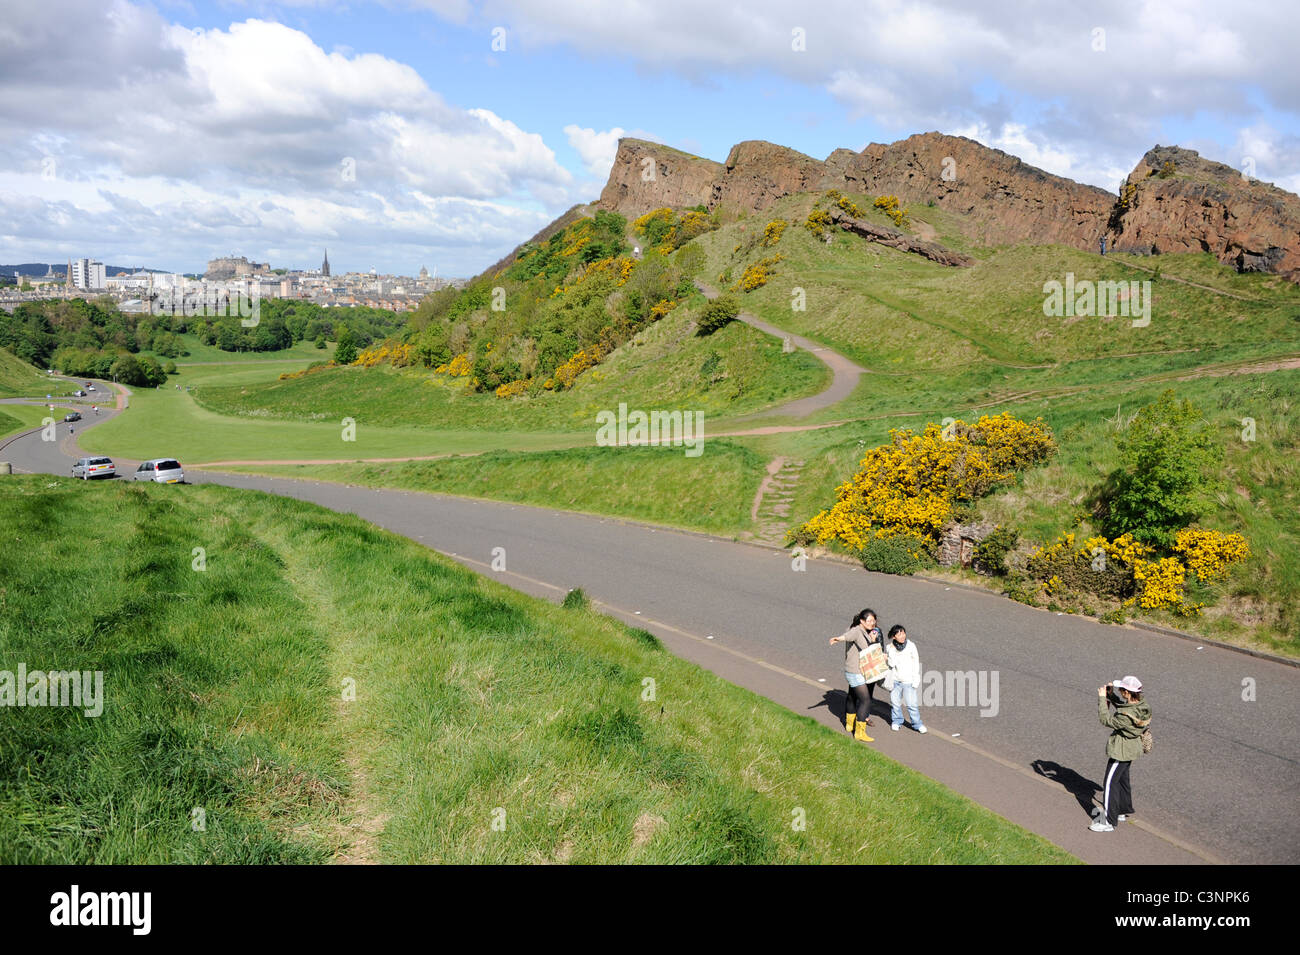 Les touristes prendre une photo à côté de Salisbury Crags de Holyrood Park dans le centre d'Édimbourg, en Écosse. Banque D'Images